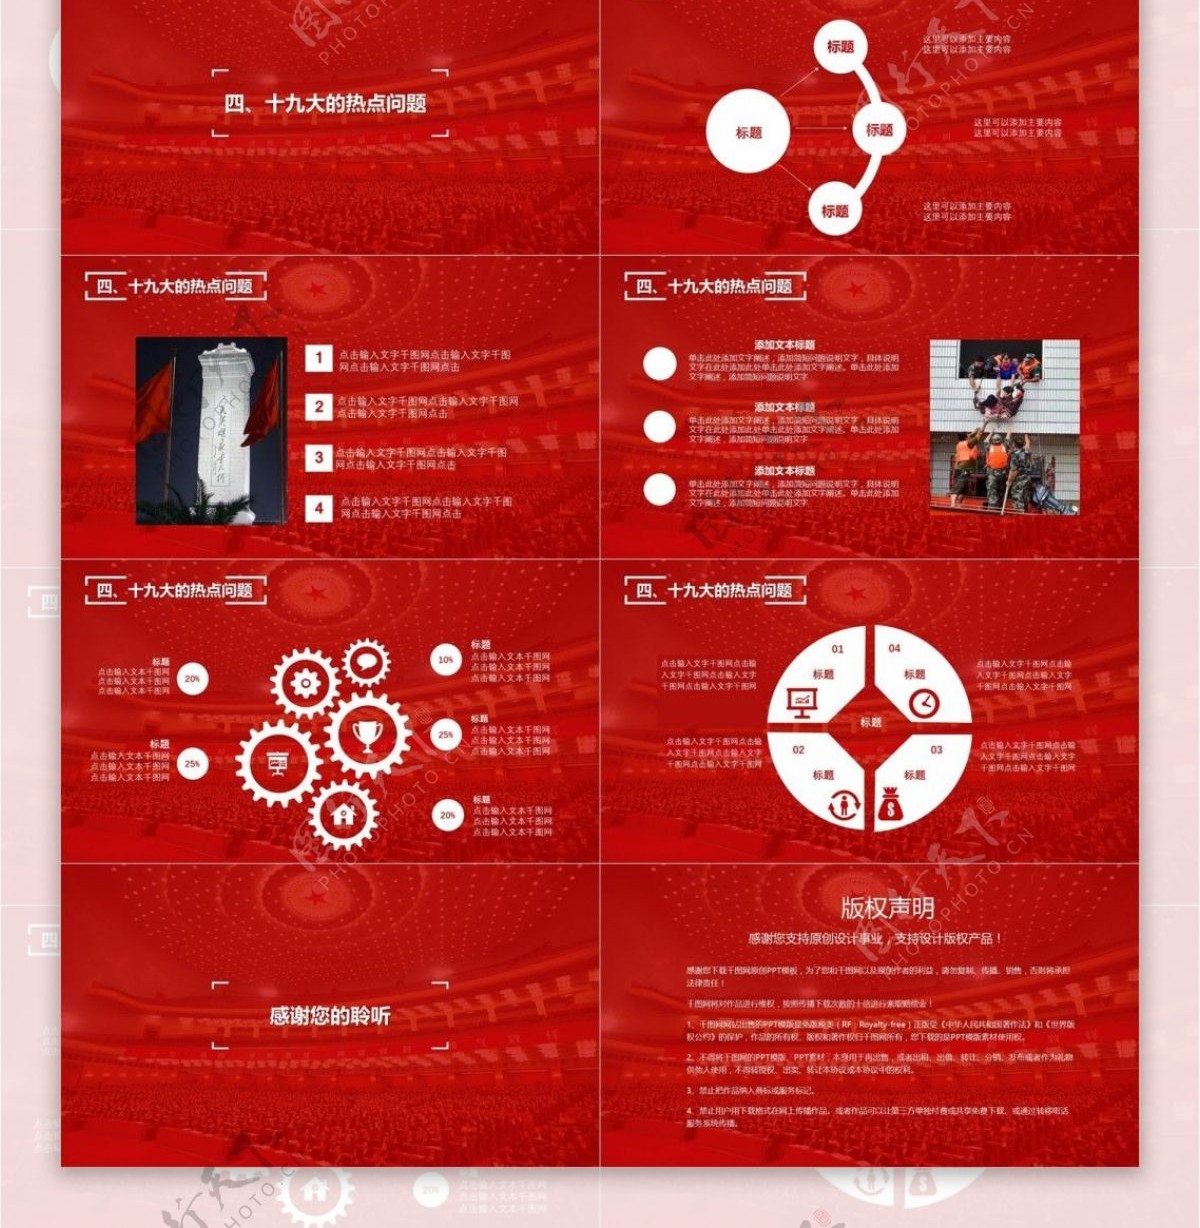 背景直击党的十九大红色ppt模板下载免费完整版